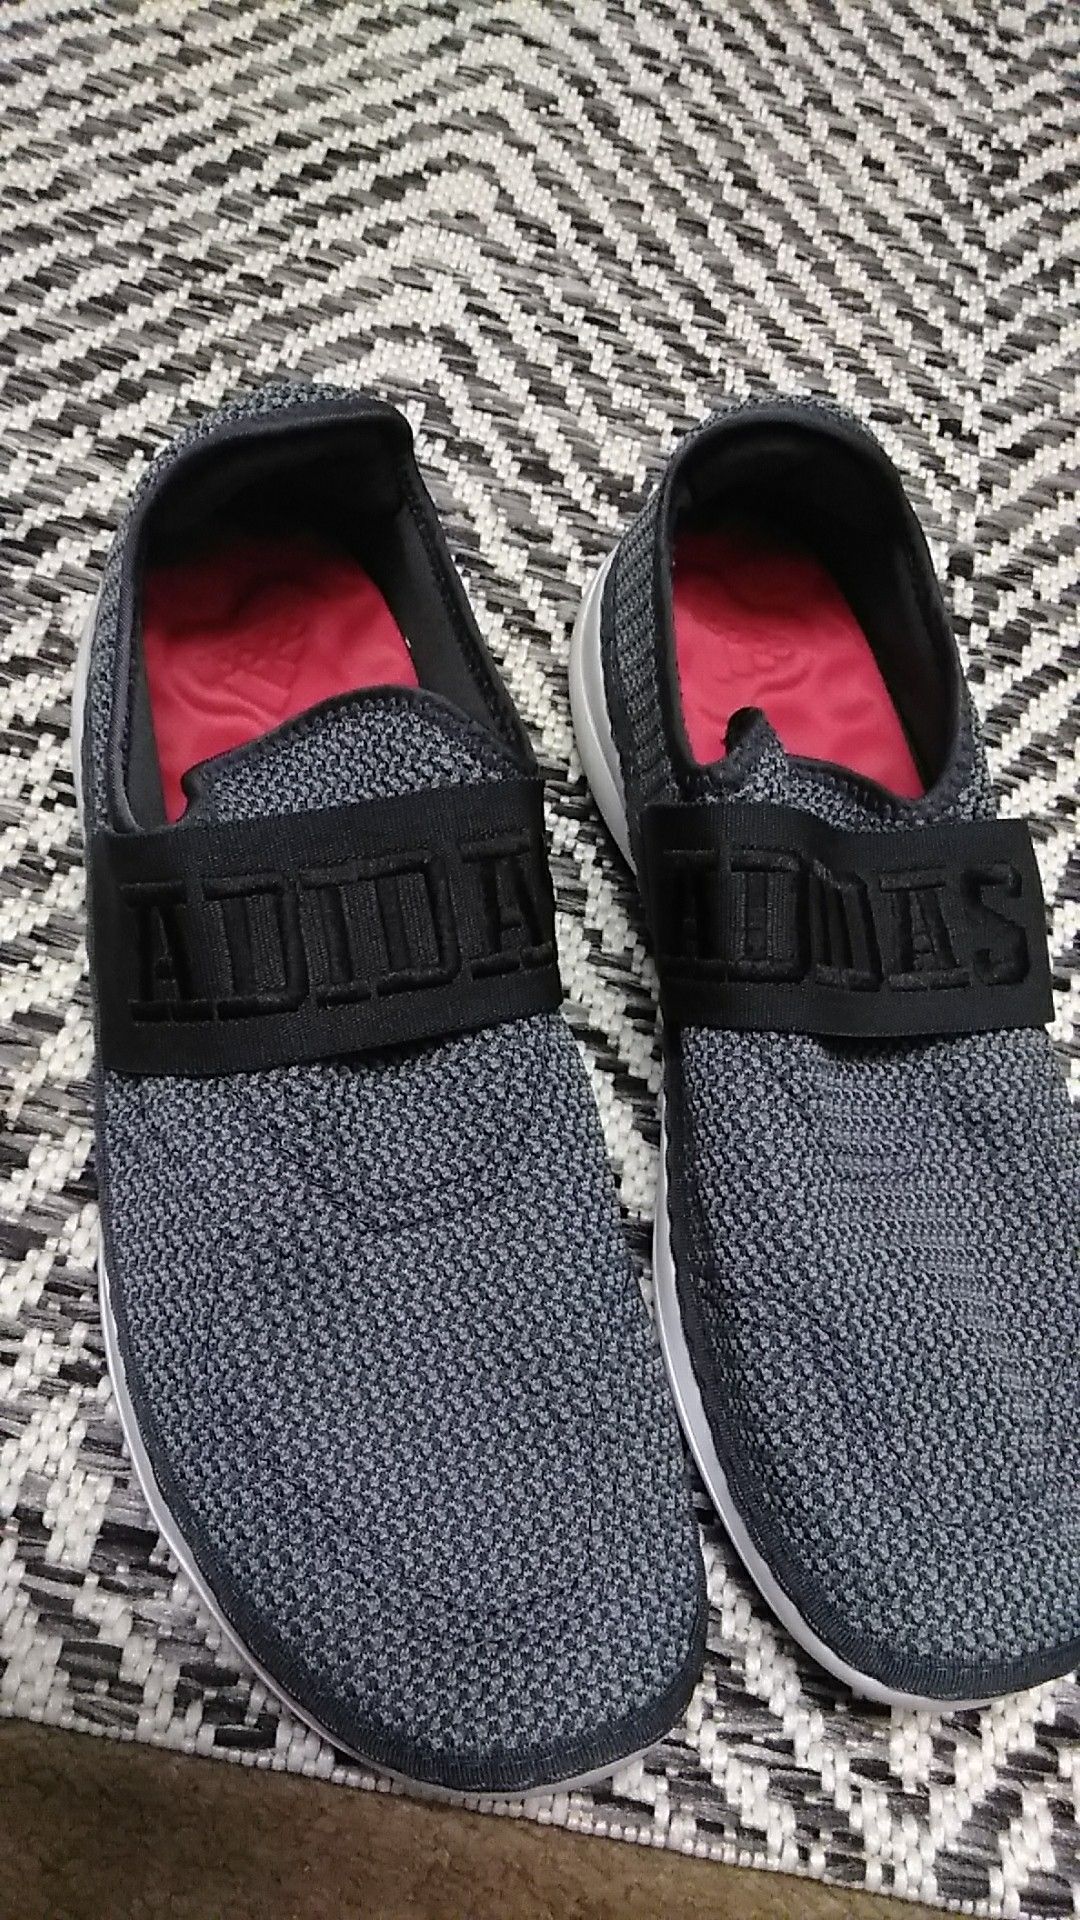 Adidas slip on shoes grey/black size 11